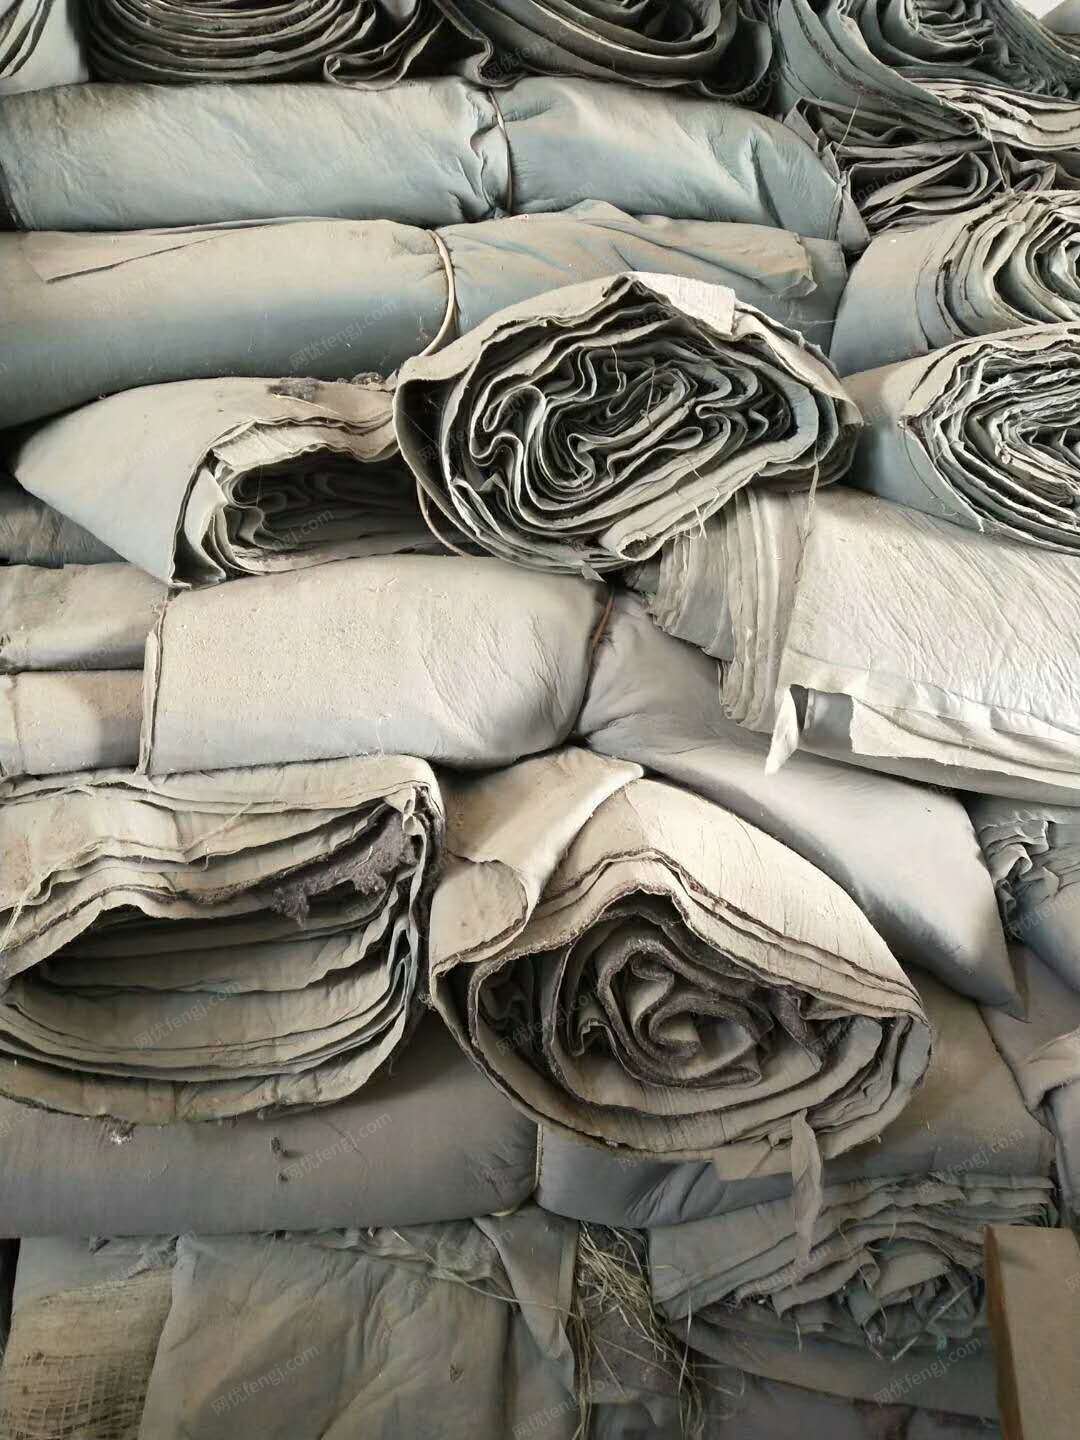 出售保温毯:两面无纺布，中间中空棉。宽1.7